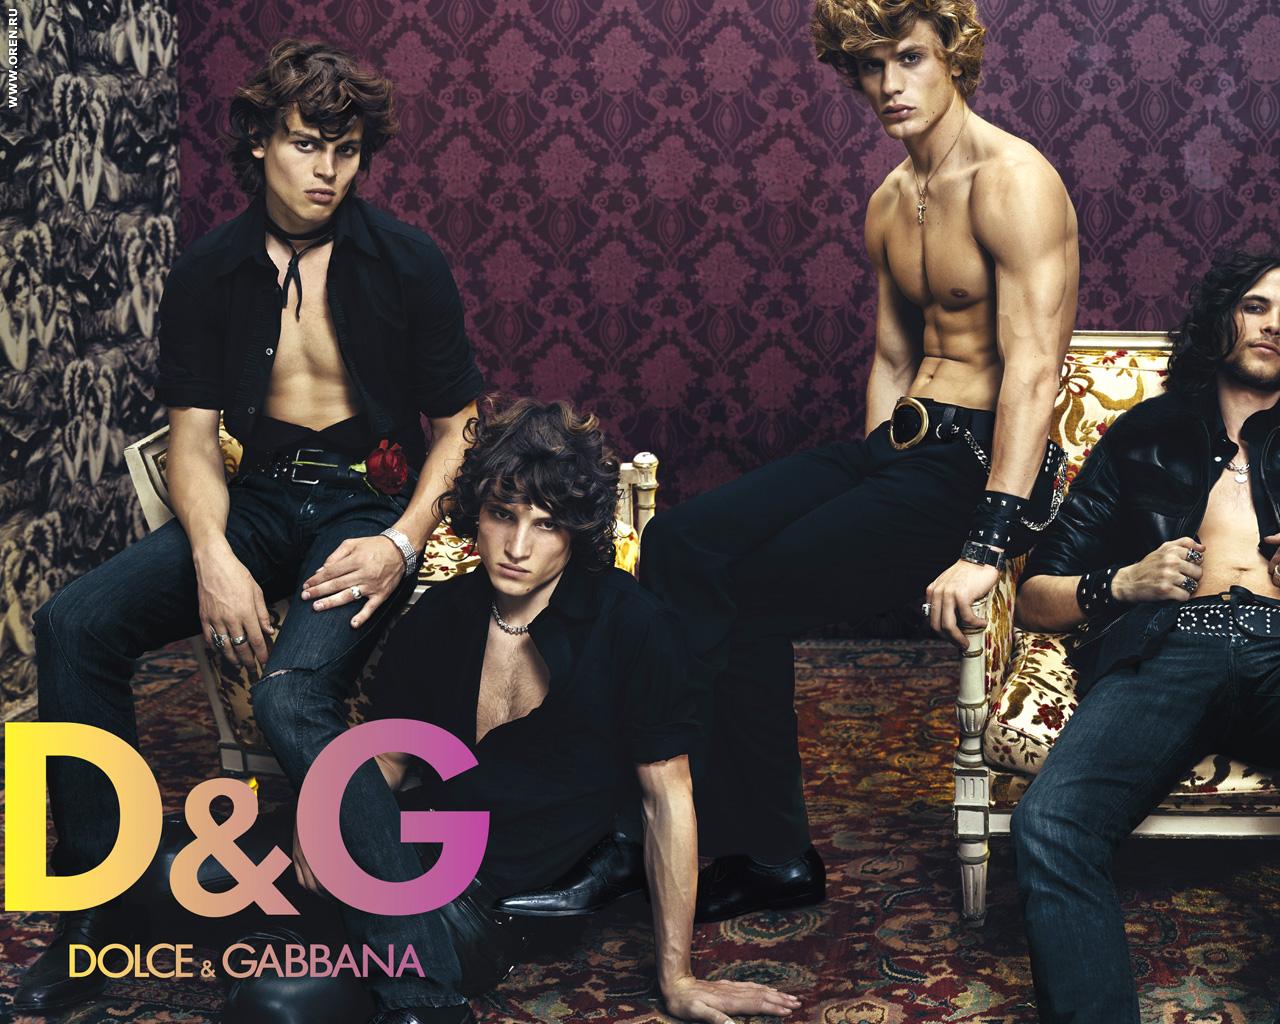 Previous, Brands - Dolce Gabbana wallpaper